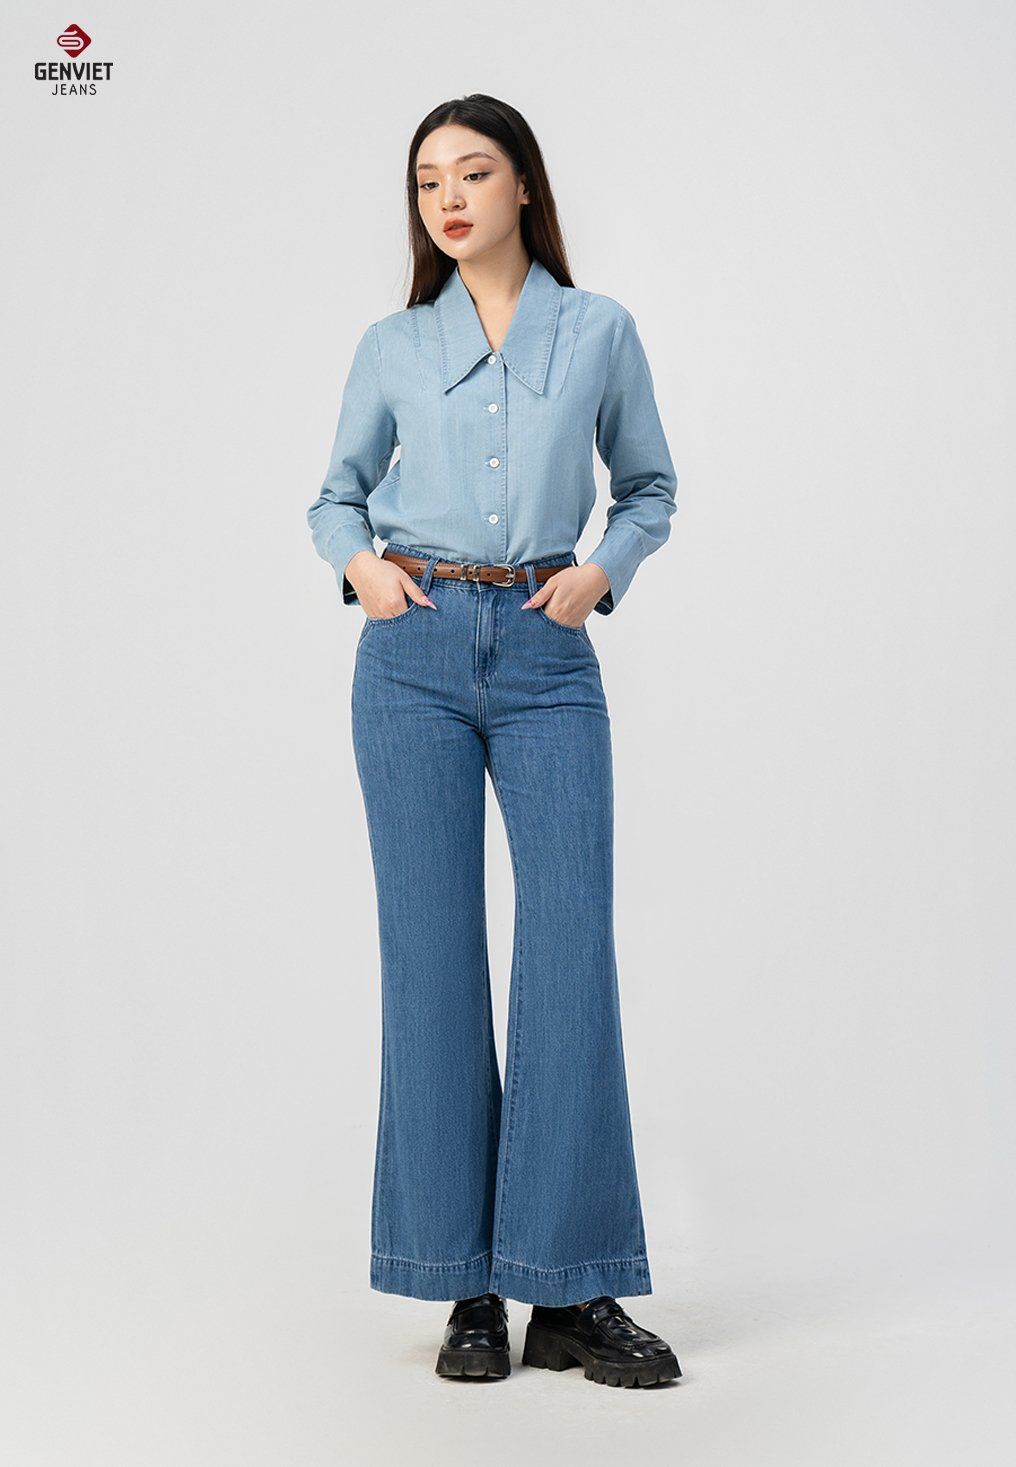  Áo Sơ Mi Dài Tay Nữ Jeans Sợi Cotton USA Suông Trẻ Trung TA124J8542 